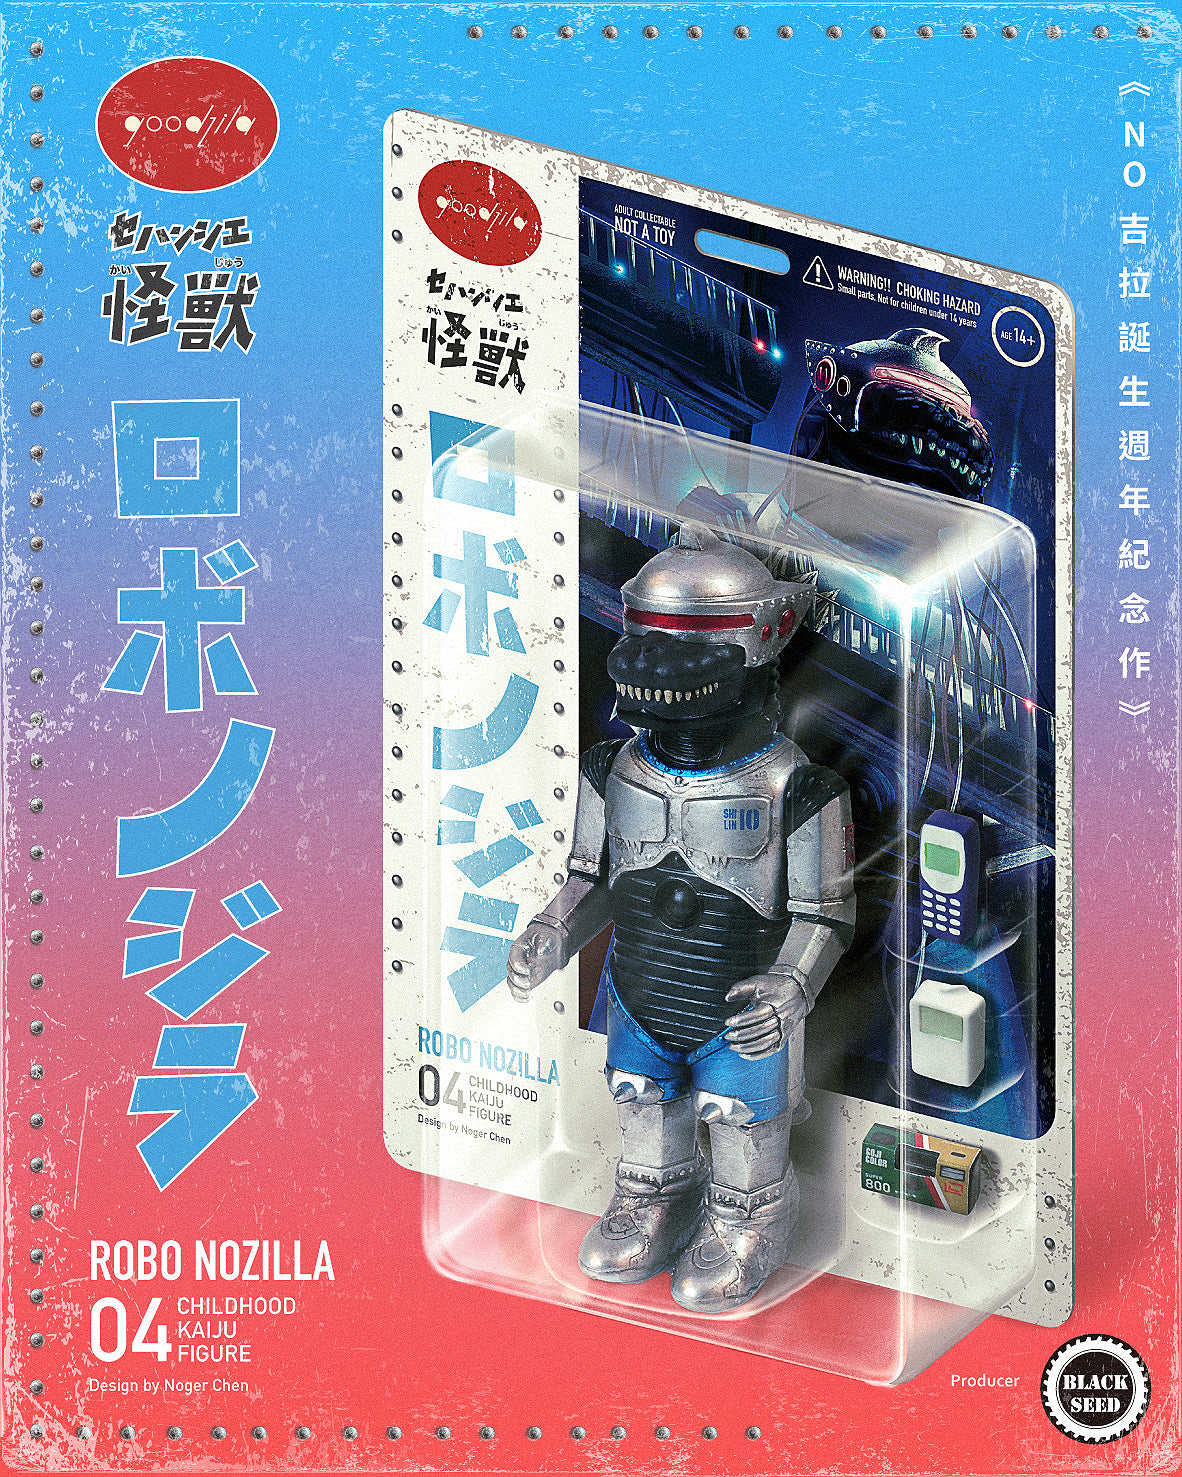 Robo Nozilla by Noger Chen Nog Toy